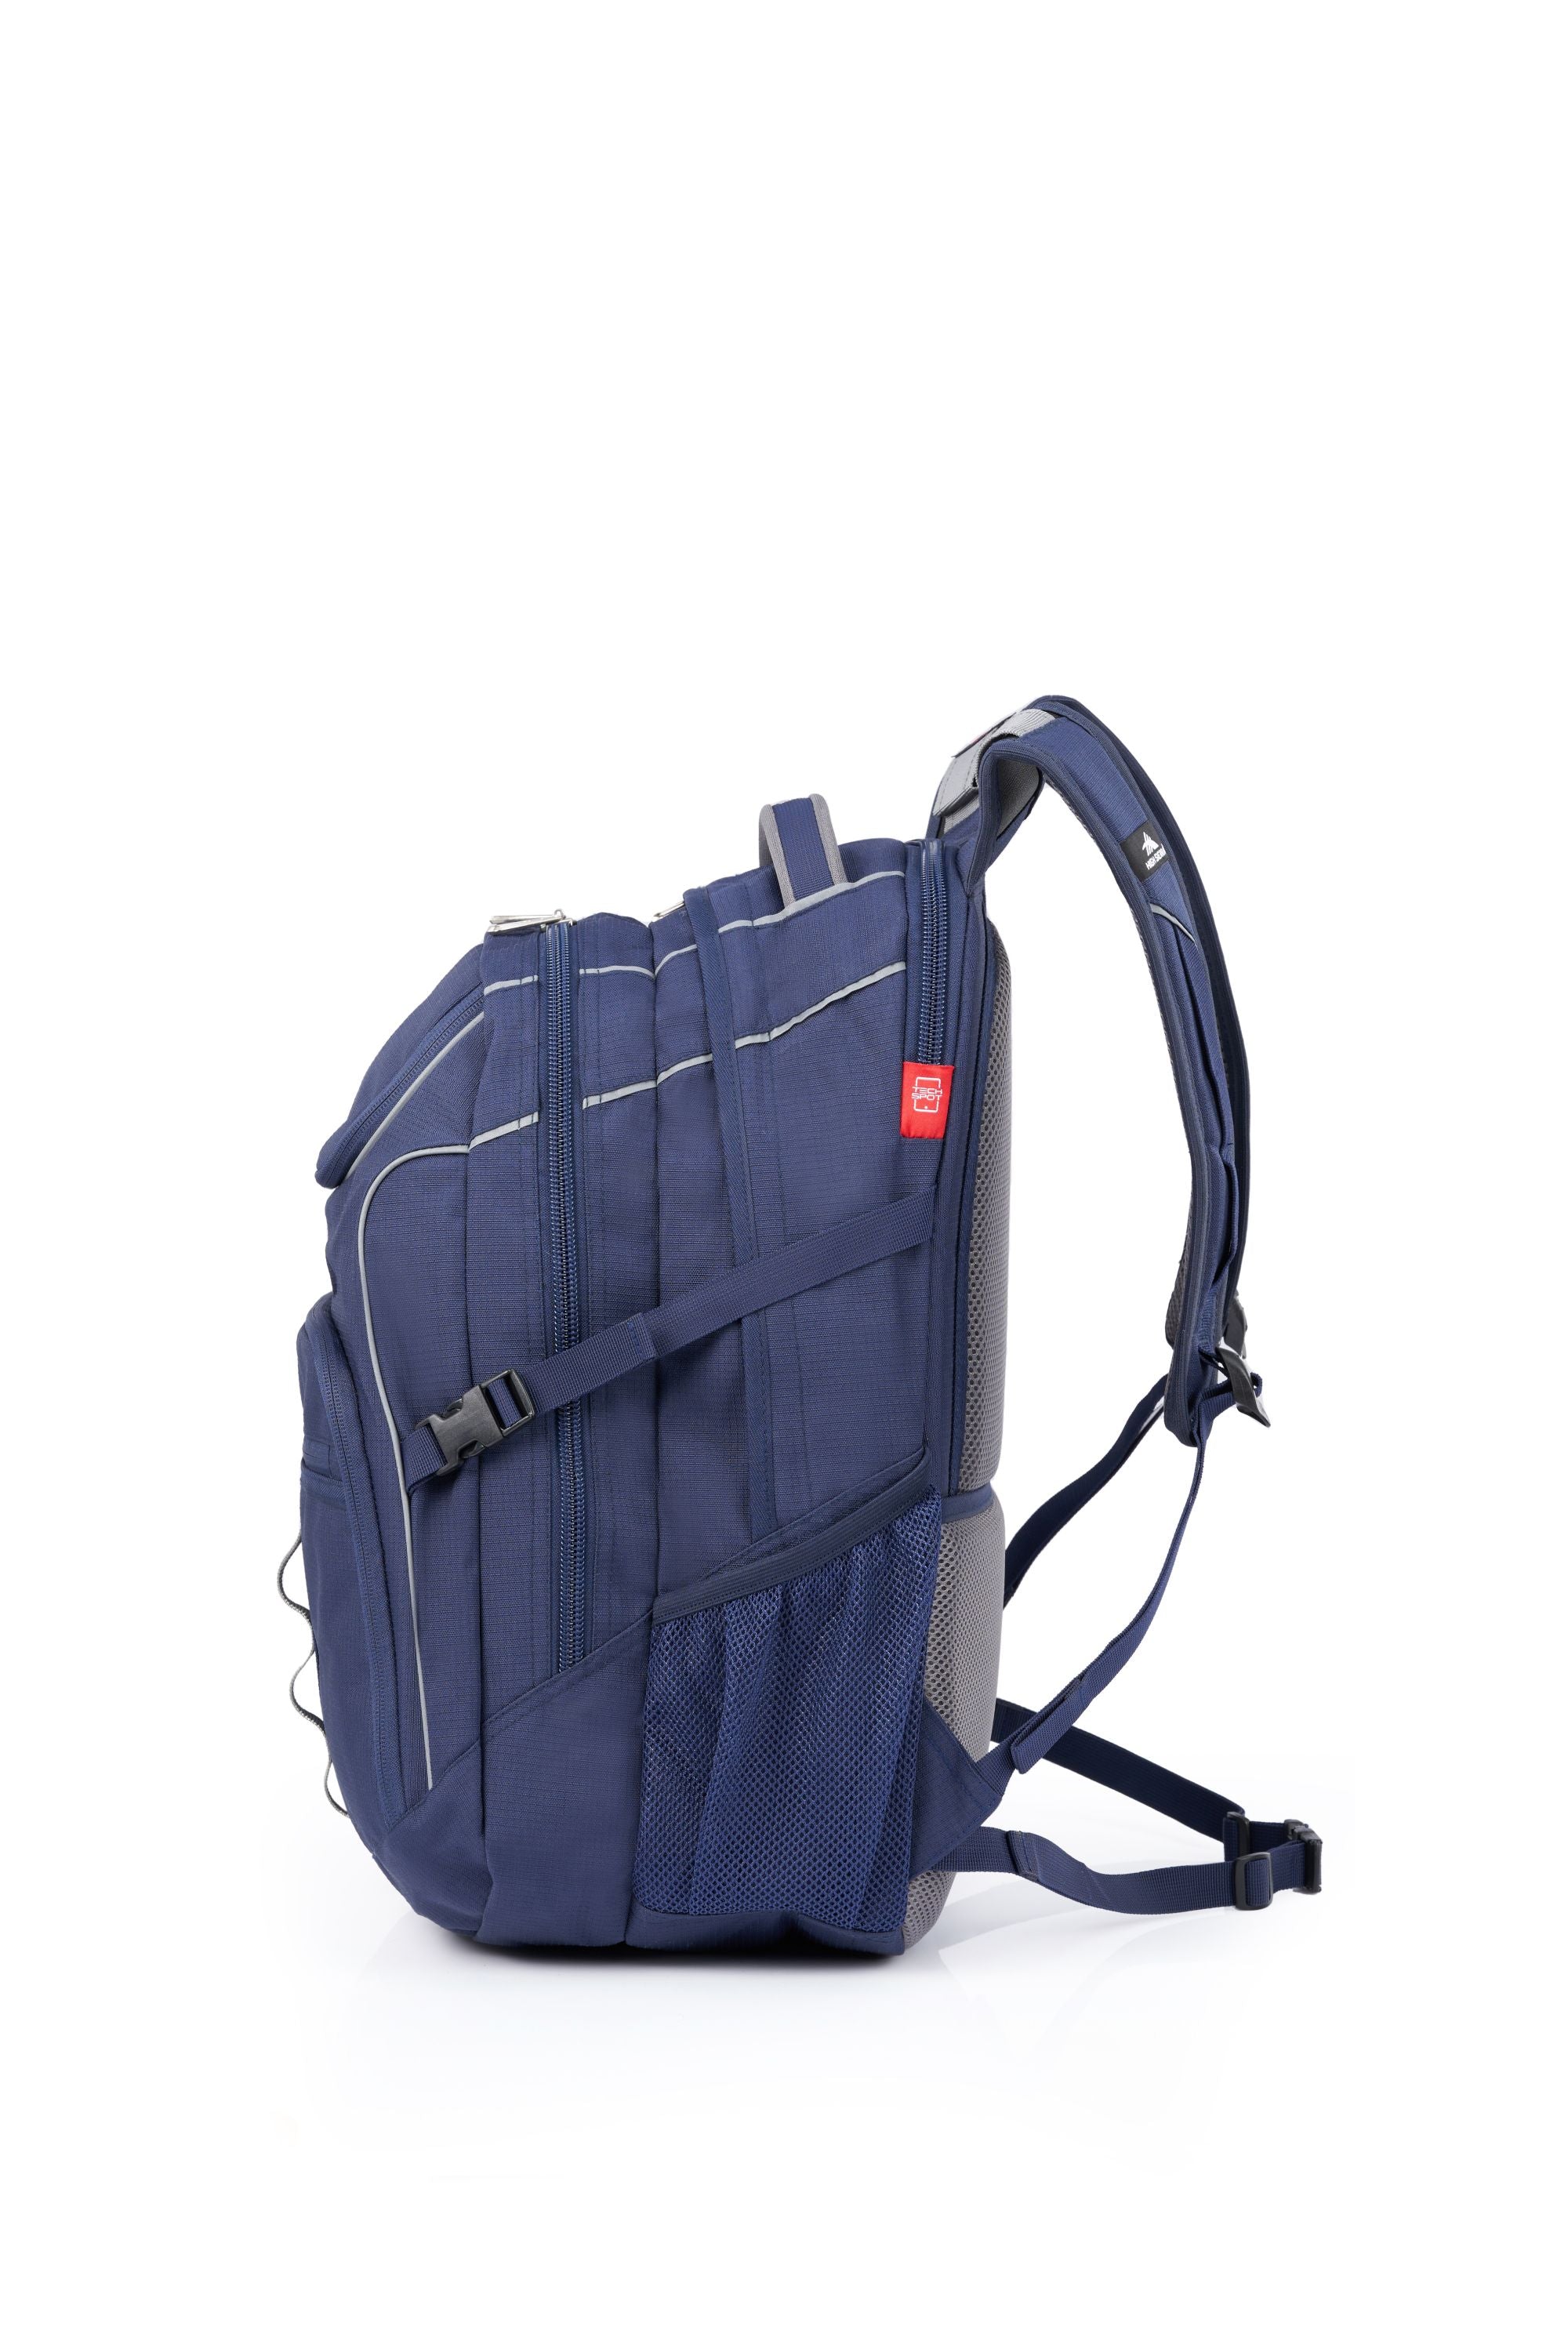 High Sierra - Access 3.0 Eco Backpack - Marine Blue-3